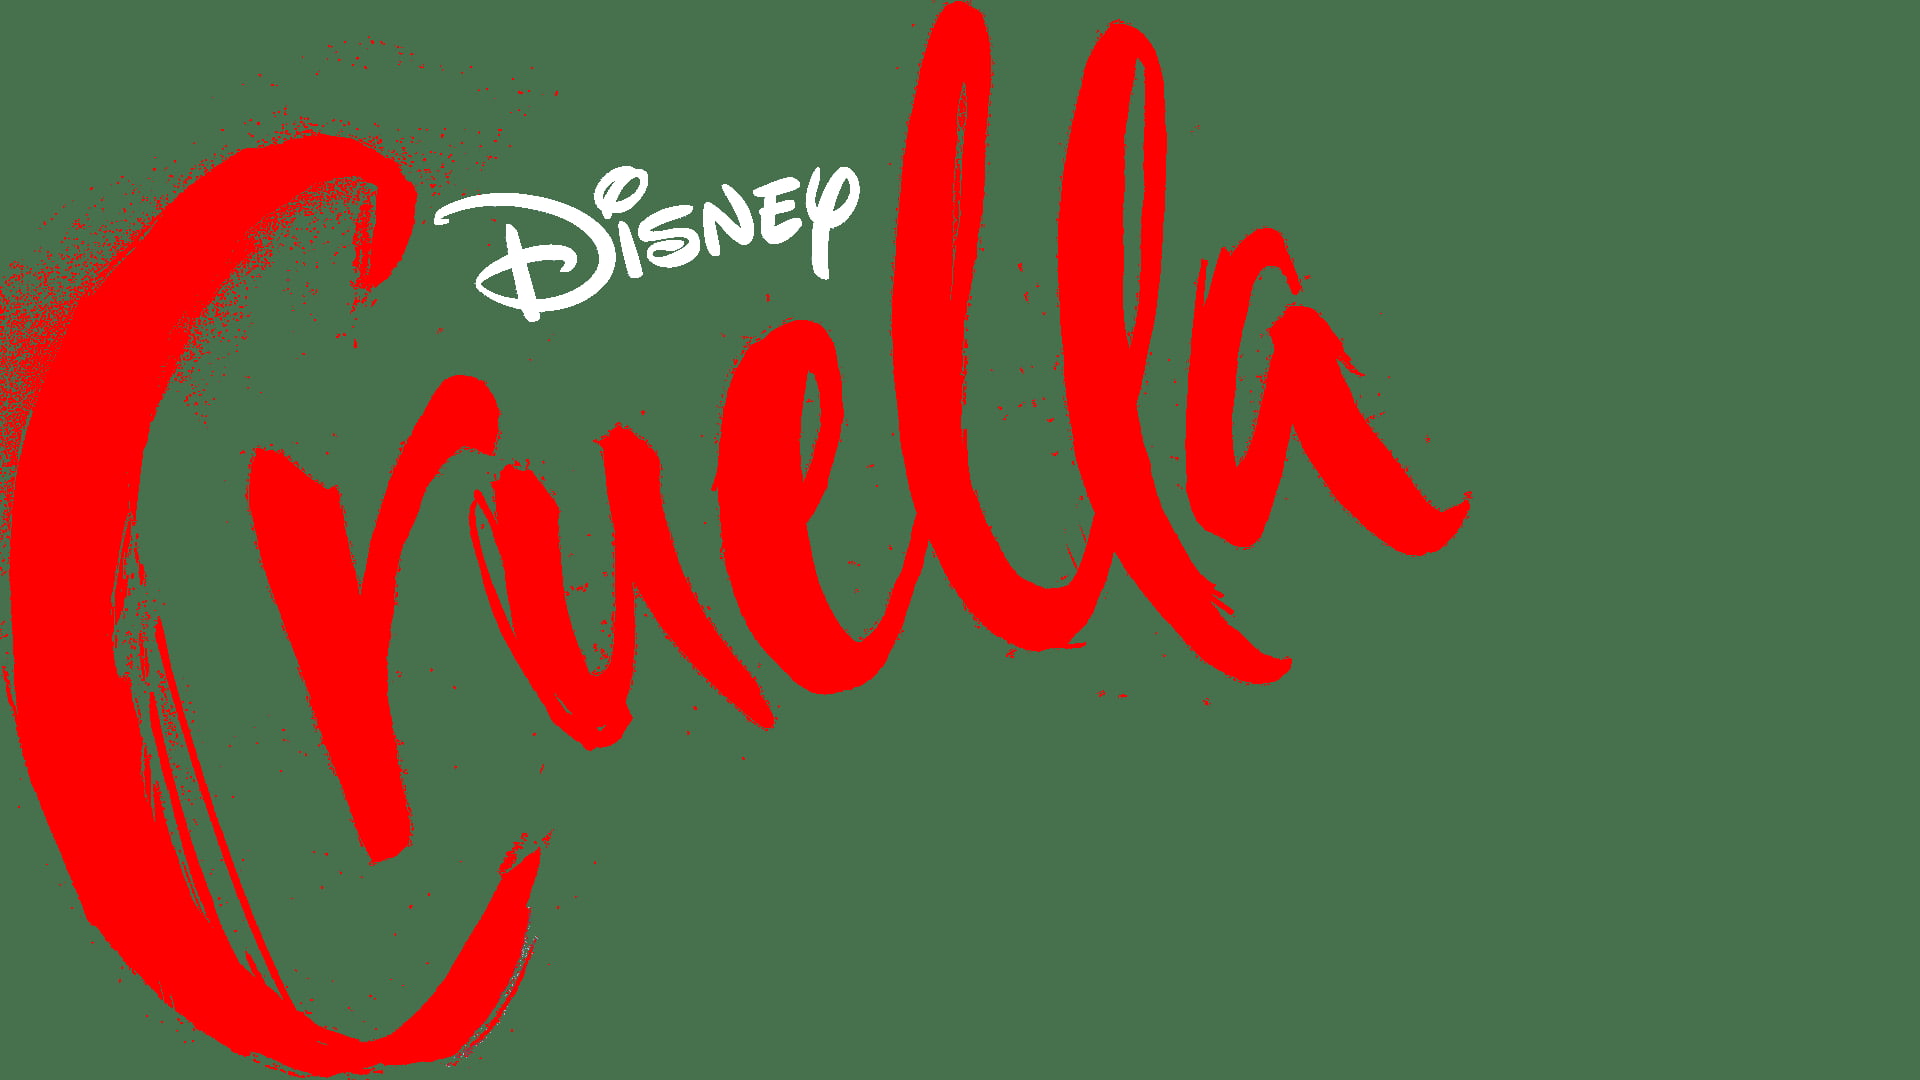 Cruella, Emma Stone, Disney, 101 dalmatas, Cruella de Vil